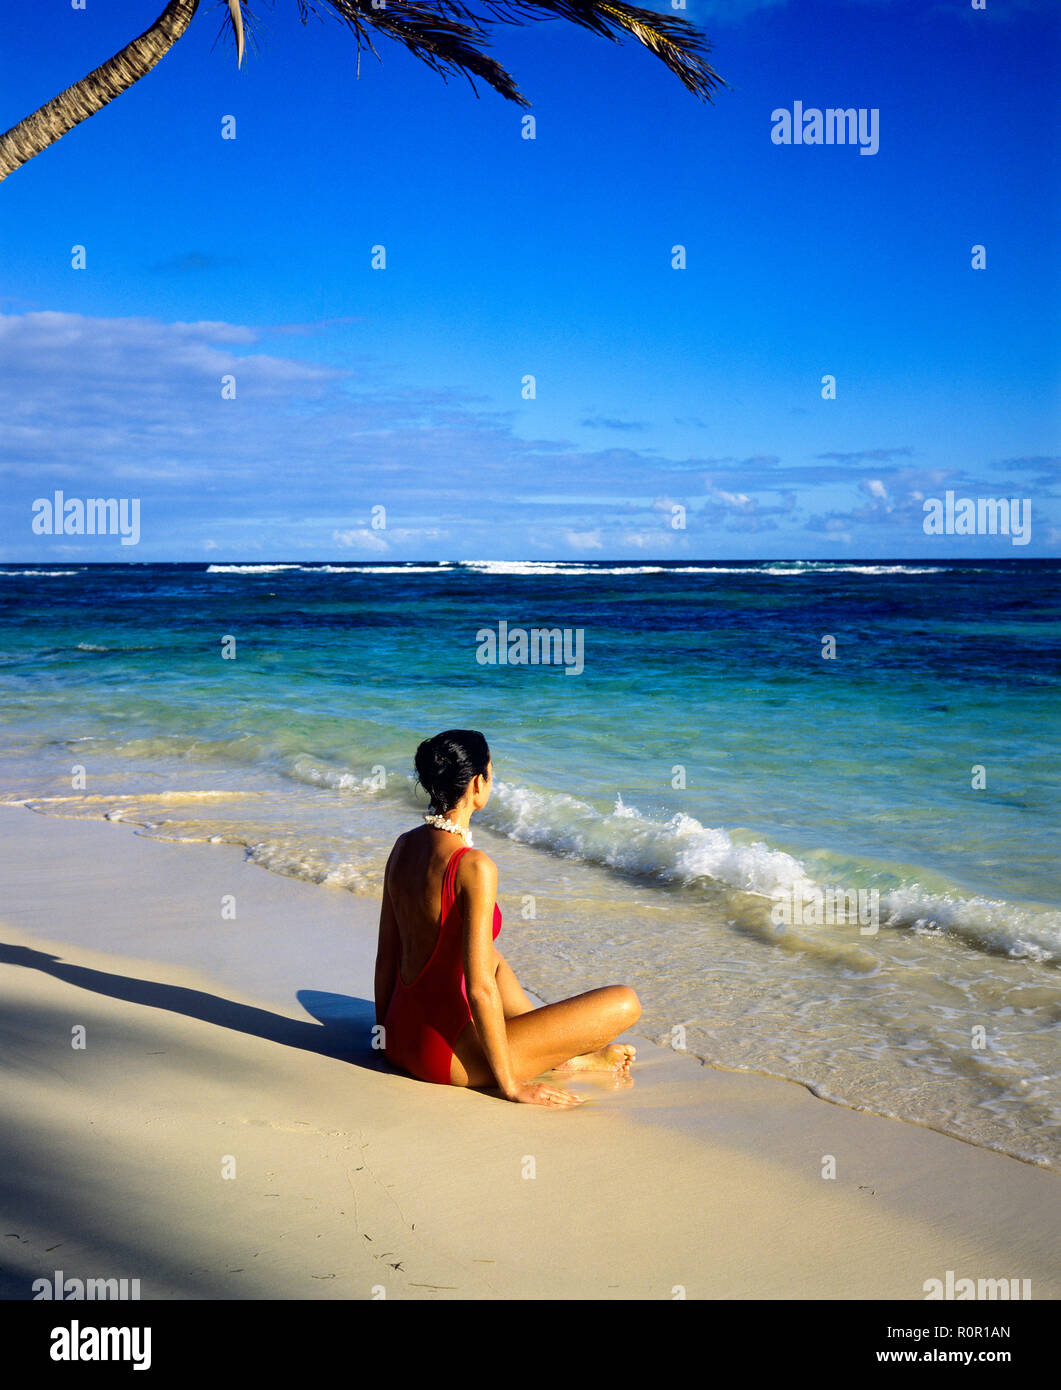 Giovane donna con il costume rosso seduto sulla spiaggia tropicale e affacciato sul Mar dei Caraibi, Guadalupa, French West Indies, Foto Stock